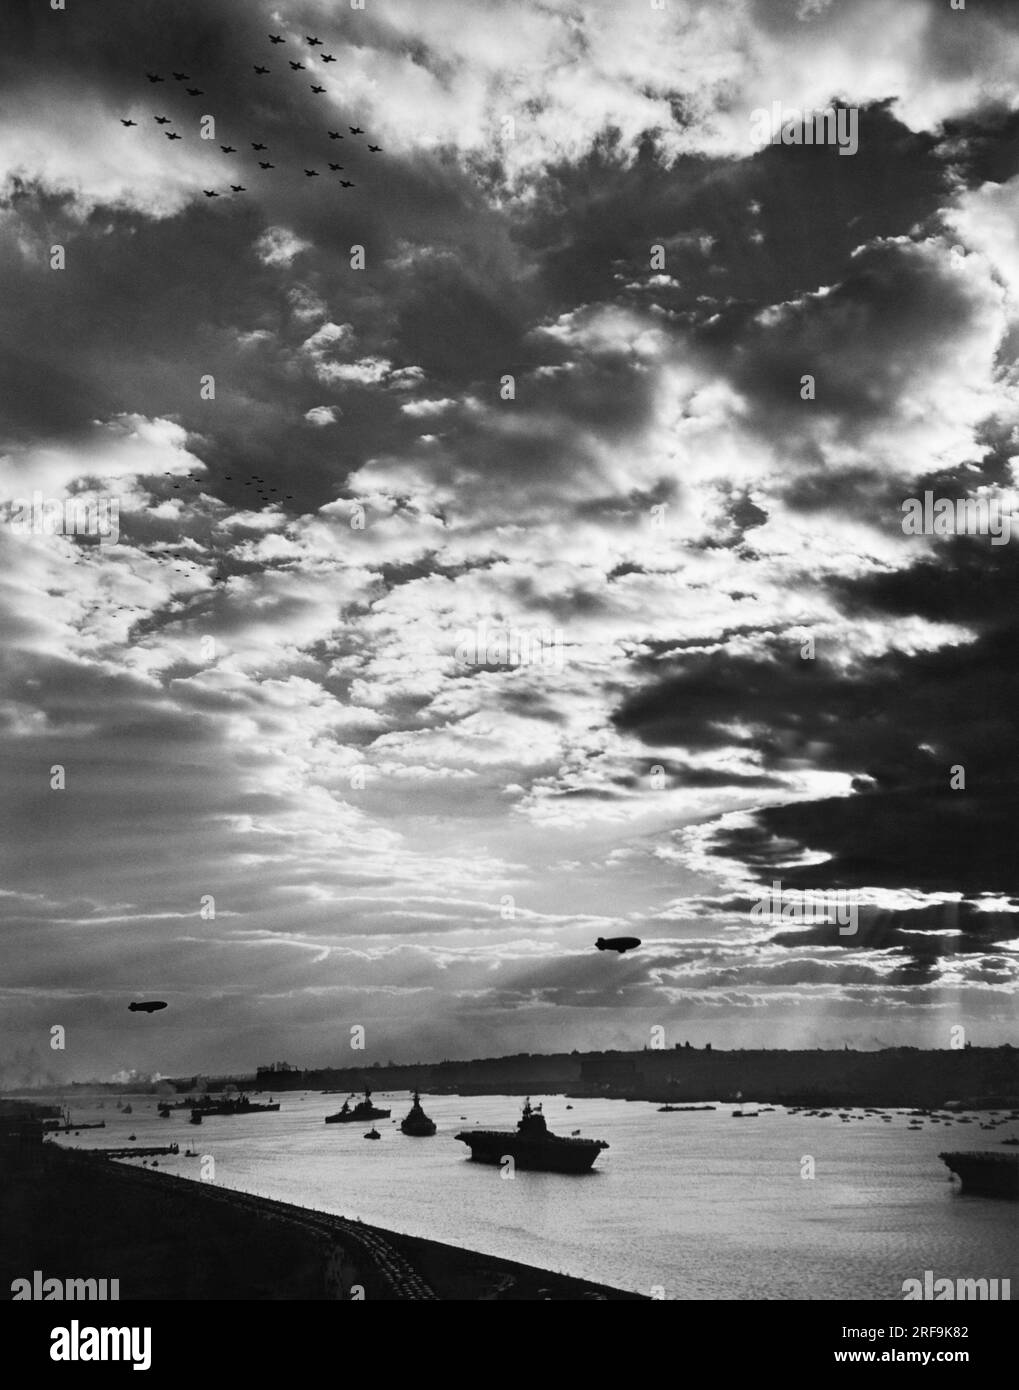 New York, New York : 29 octobre 1945 des escadrons d'avions volent au-dessus et des blimps pendent dans le ciel alors que la plus grande célébration de la Navy Day dans l'histoire de New York touche à sa fin. Le porte-avions USS Enterprise, le navire le plus décoré de l'histoire de l'US Navy, survole l'Hudson au premier plan. Banque D'Images